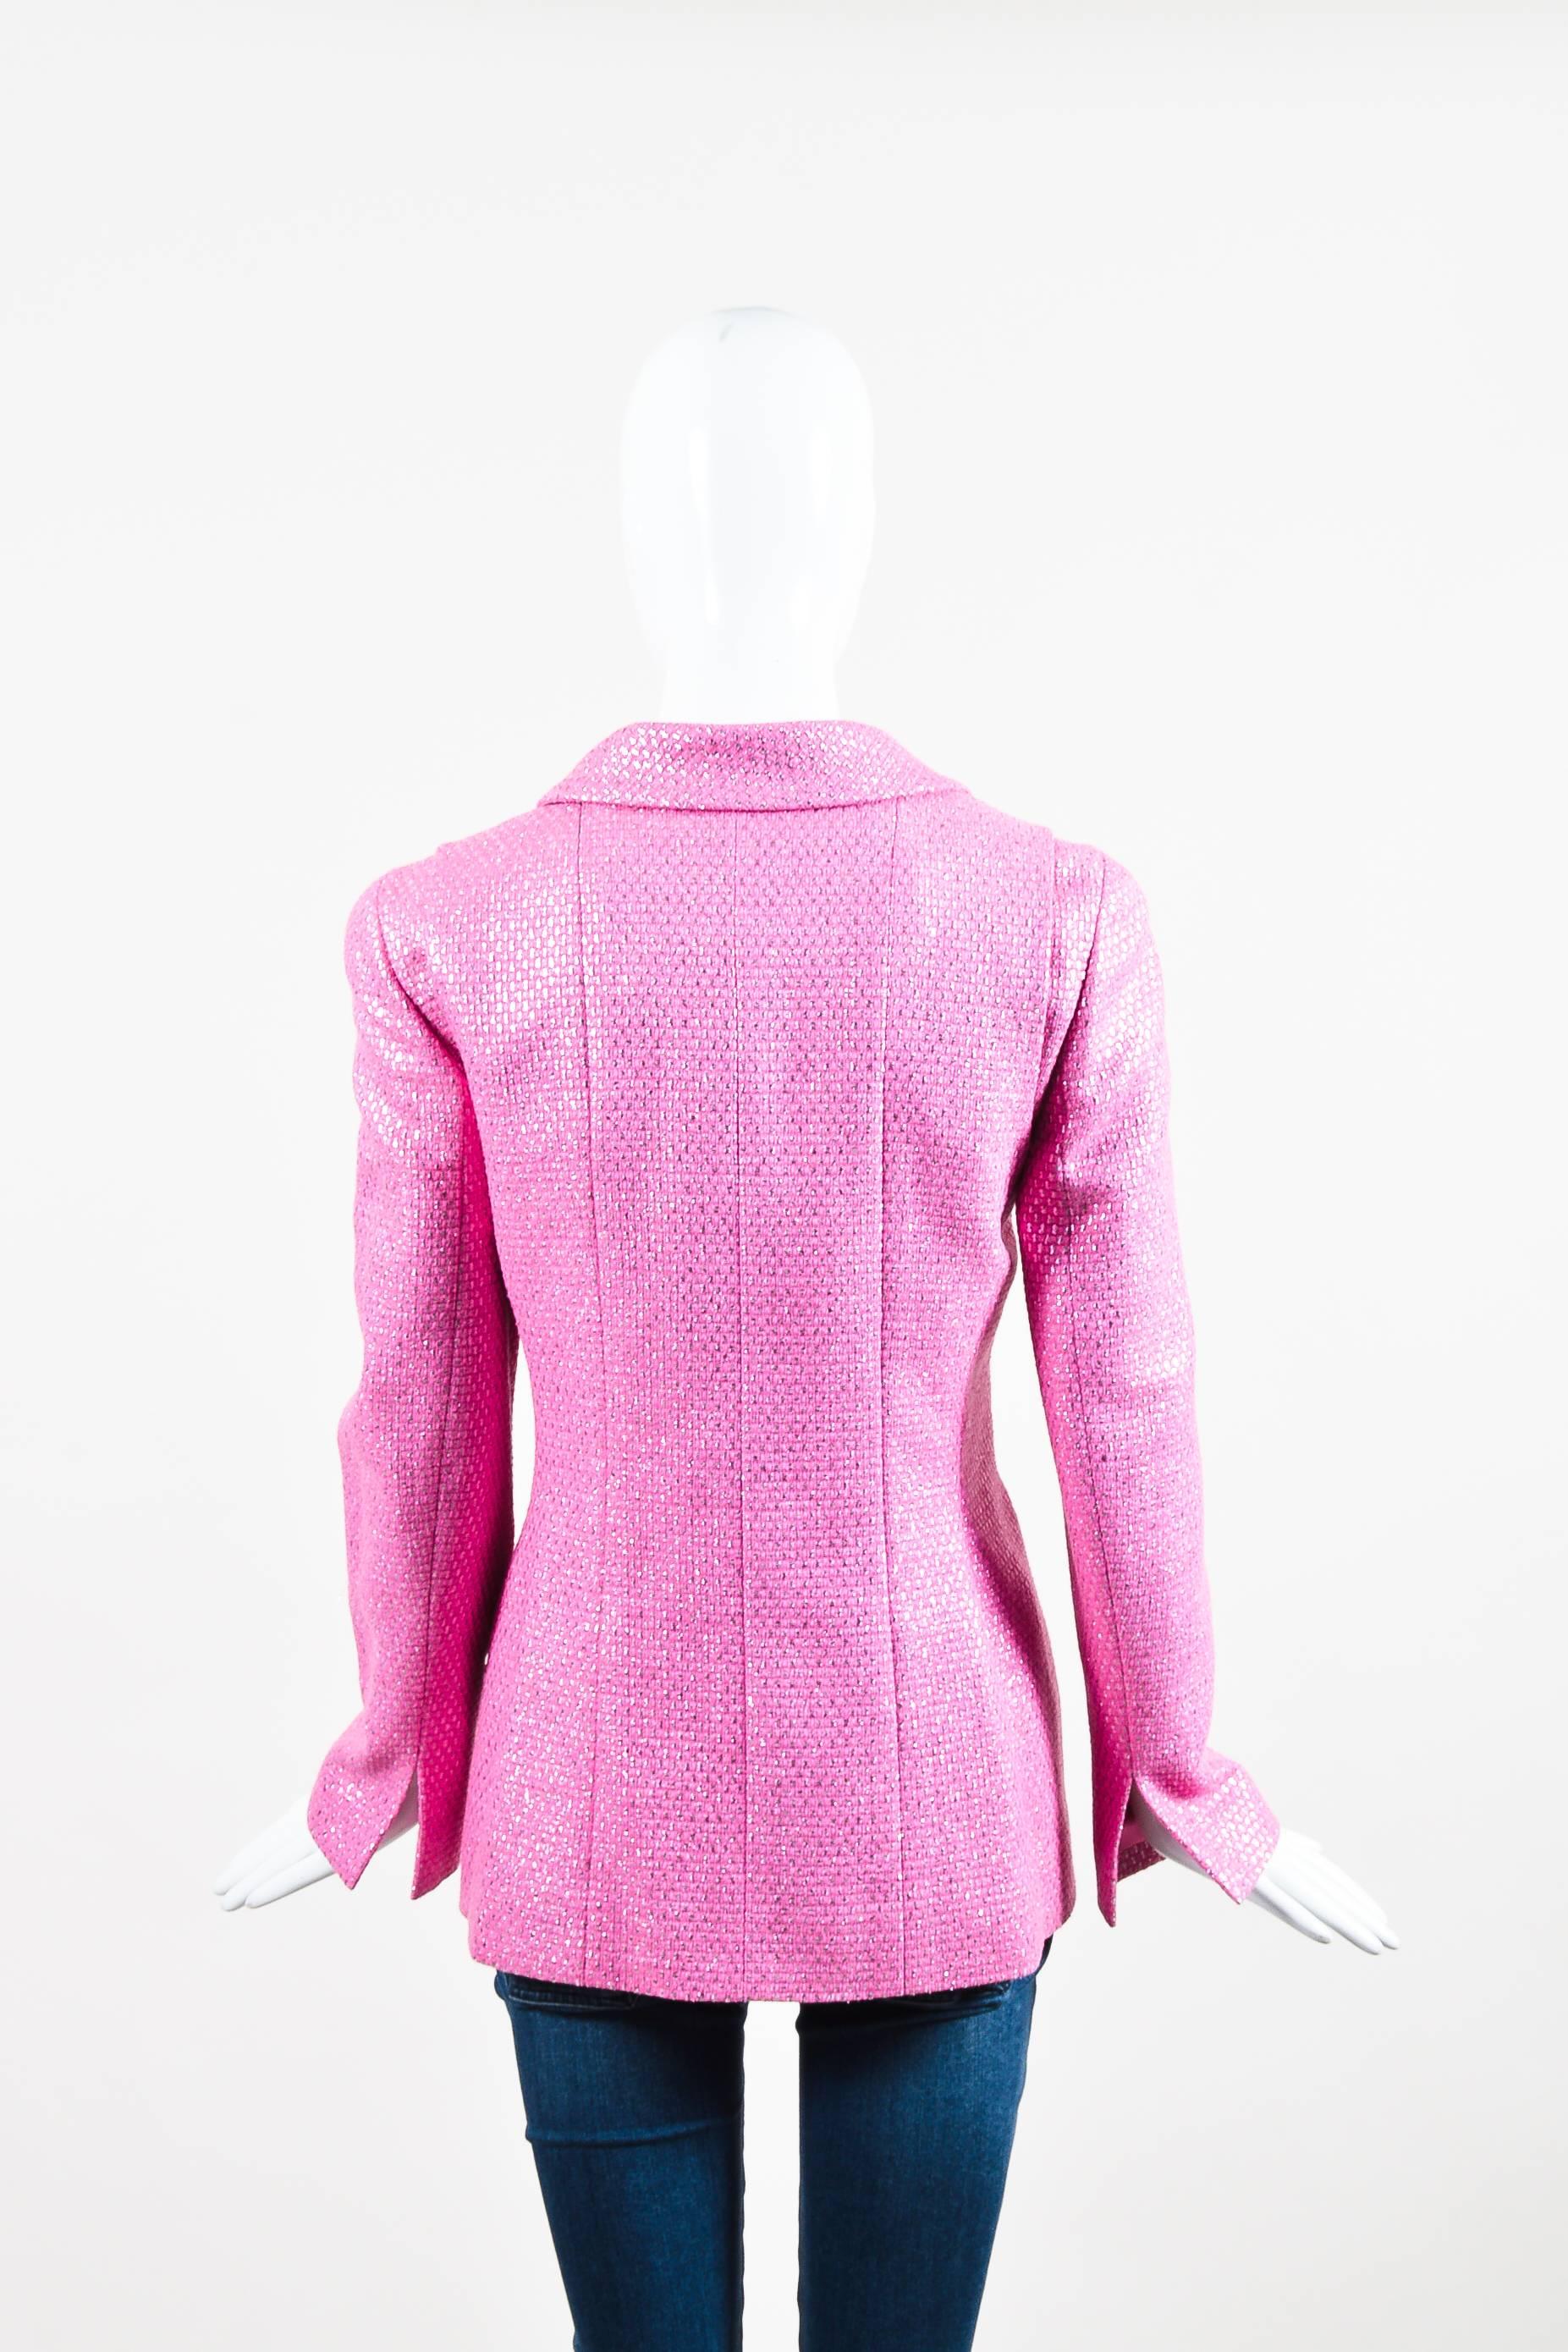 metallic pink blazer